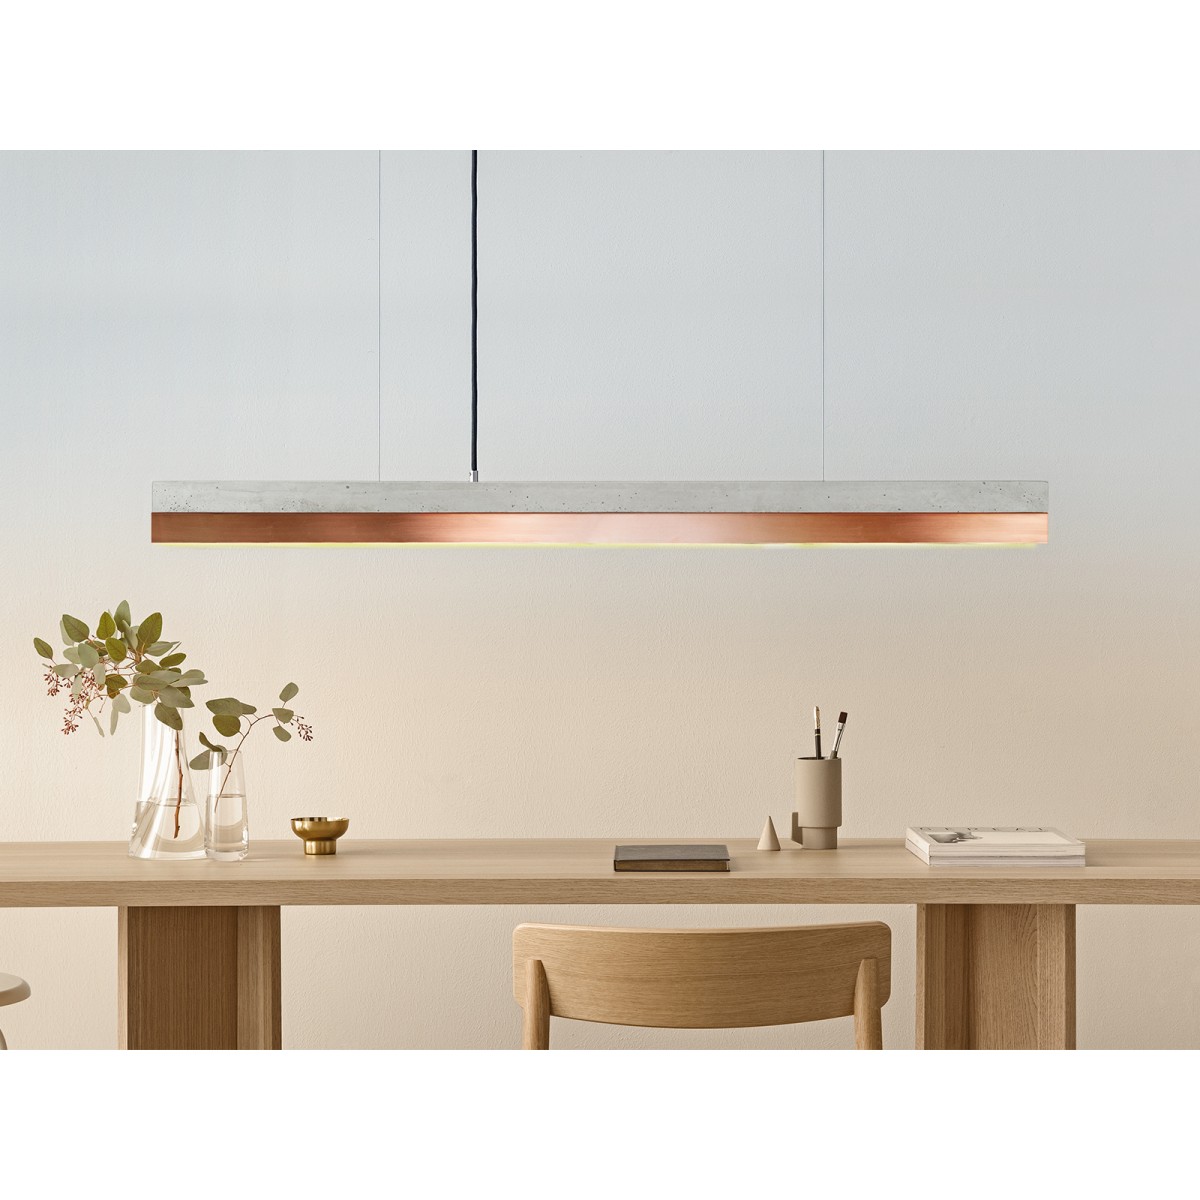 GANTlights - Beton Hängeleuchte [C-Serie]Copper Lampe minimalistisch